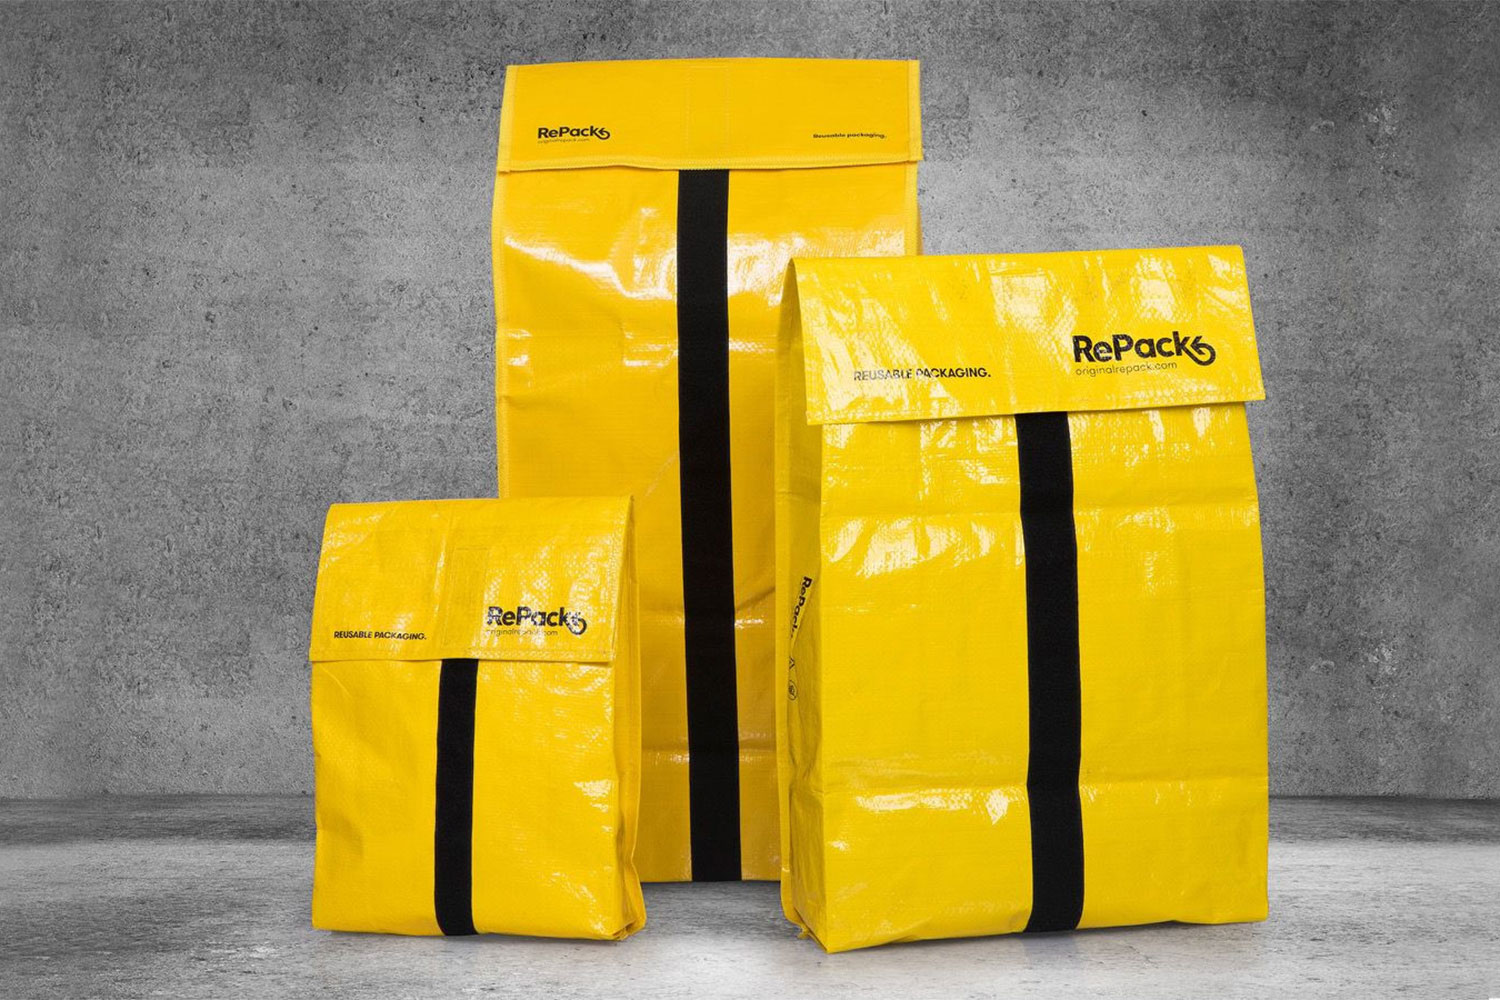 RePack bags